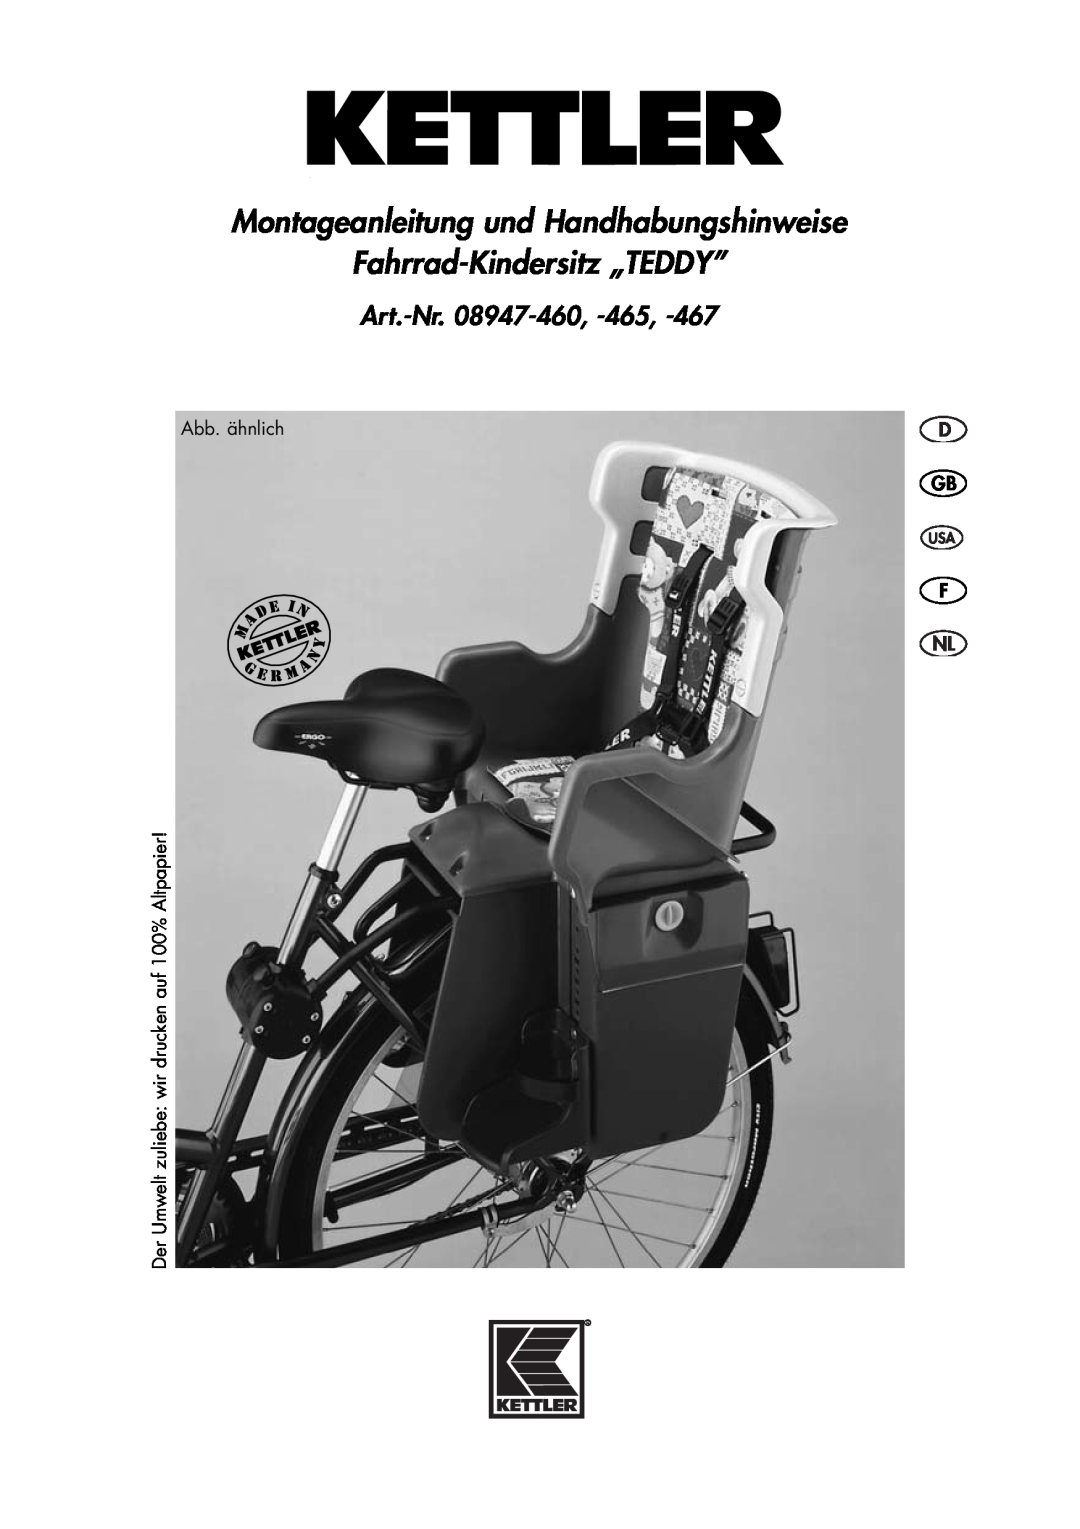 Kettler 08947-467 manual Montageanleitung und Handhabungshinweise Fahrrad-Kindersitz „TEDDY”, Art.-Nr. 08947-460, -465 